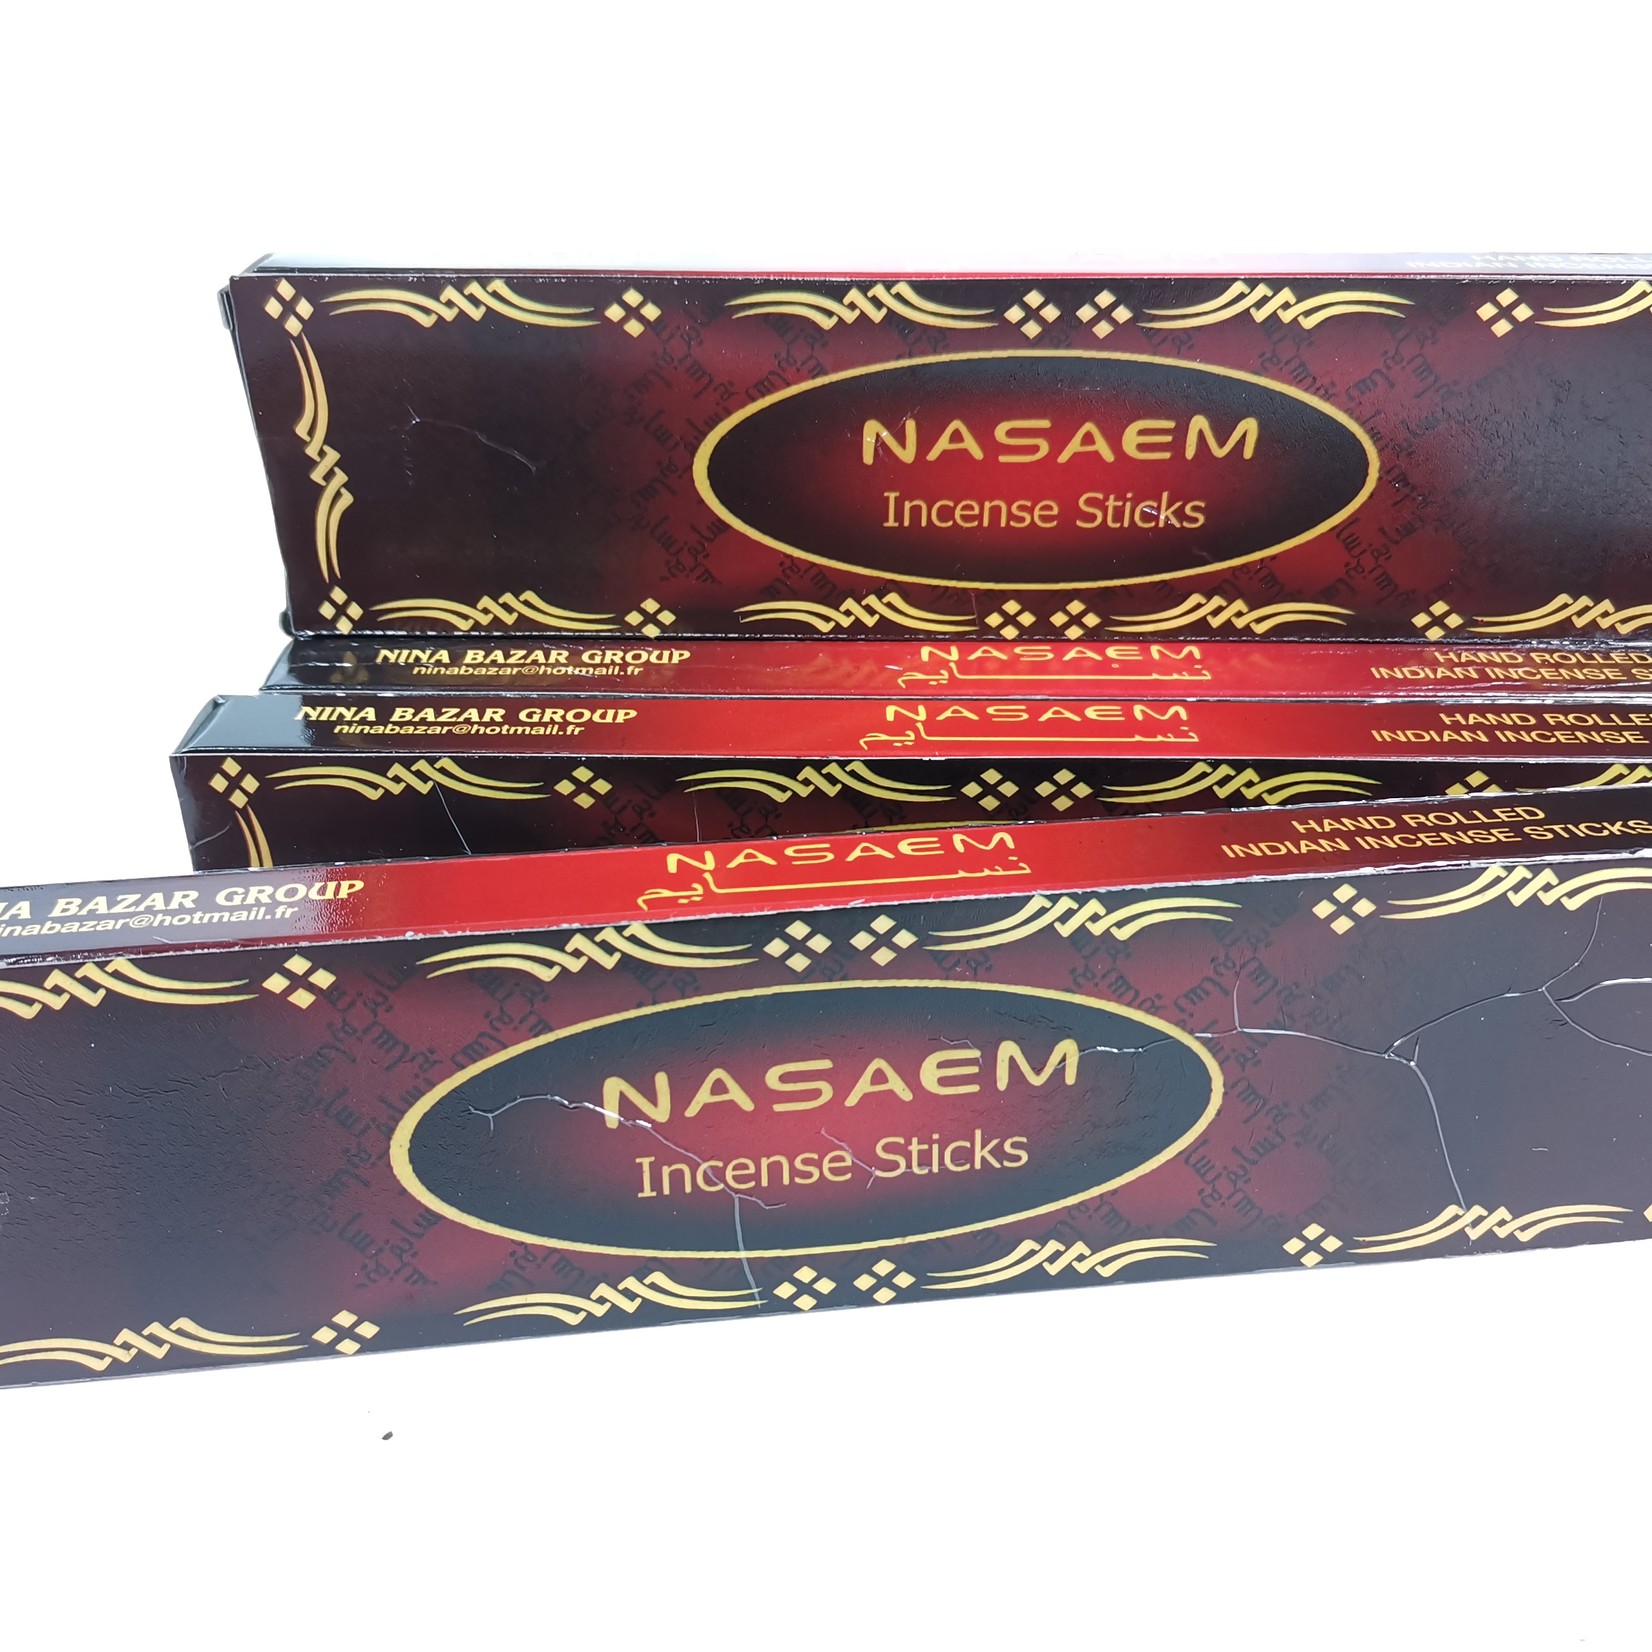 NASAEM Incense Sticks